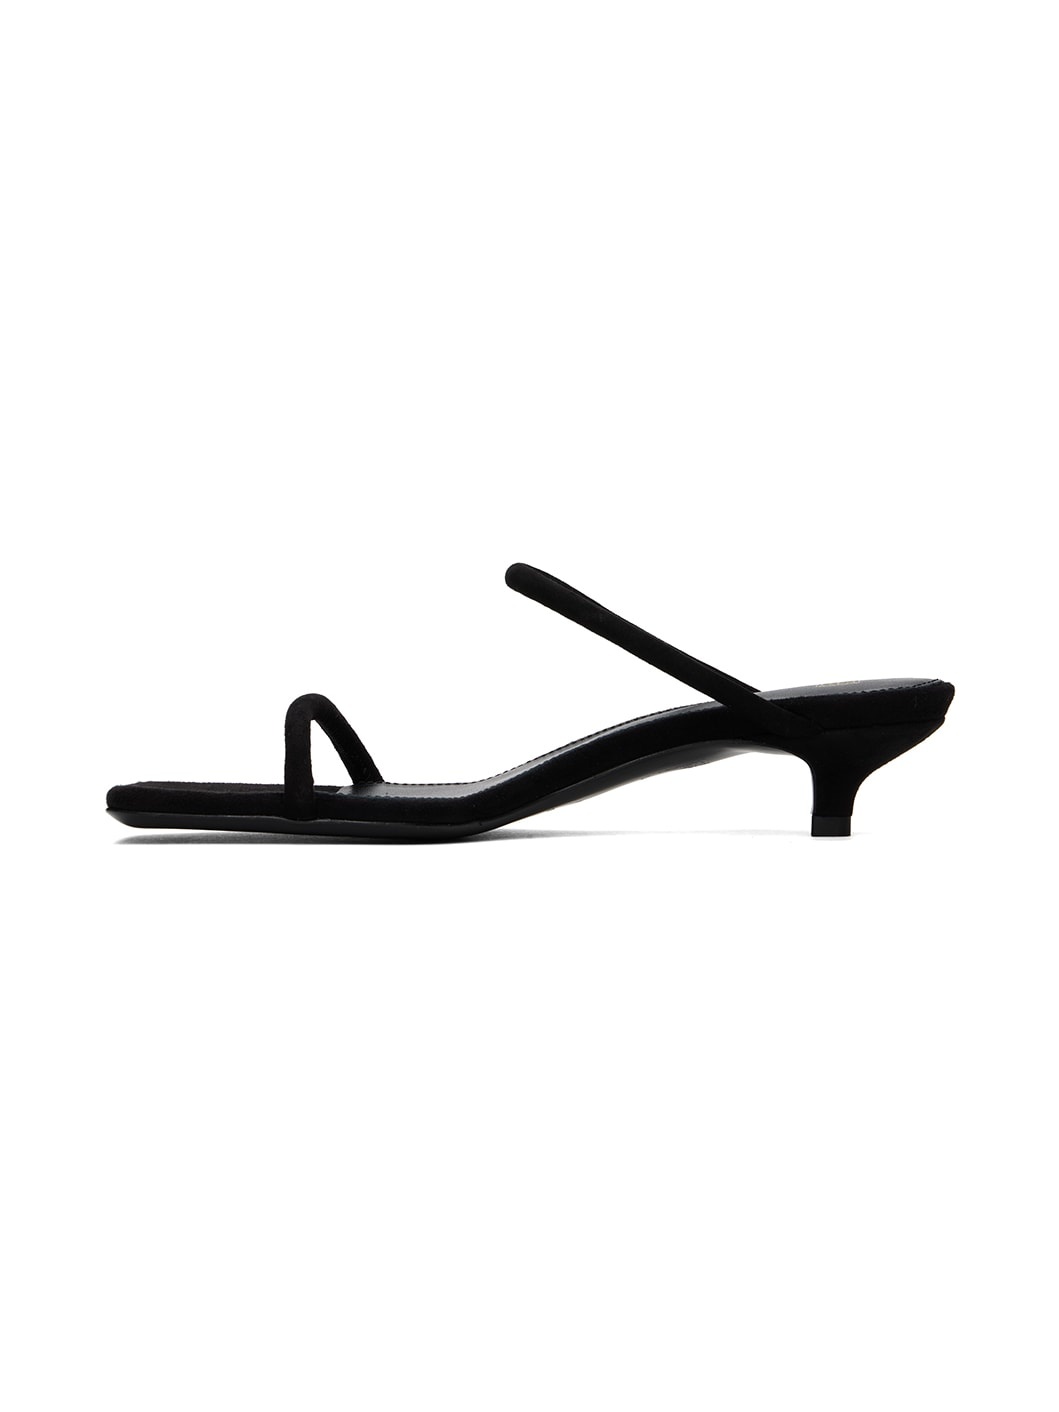 Black 'The Minimalist' Heeled Sandals - 3